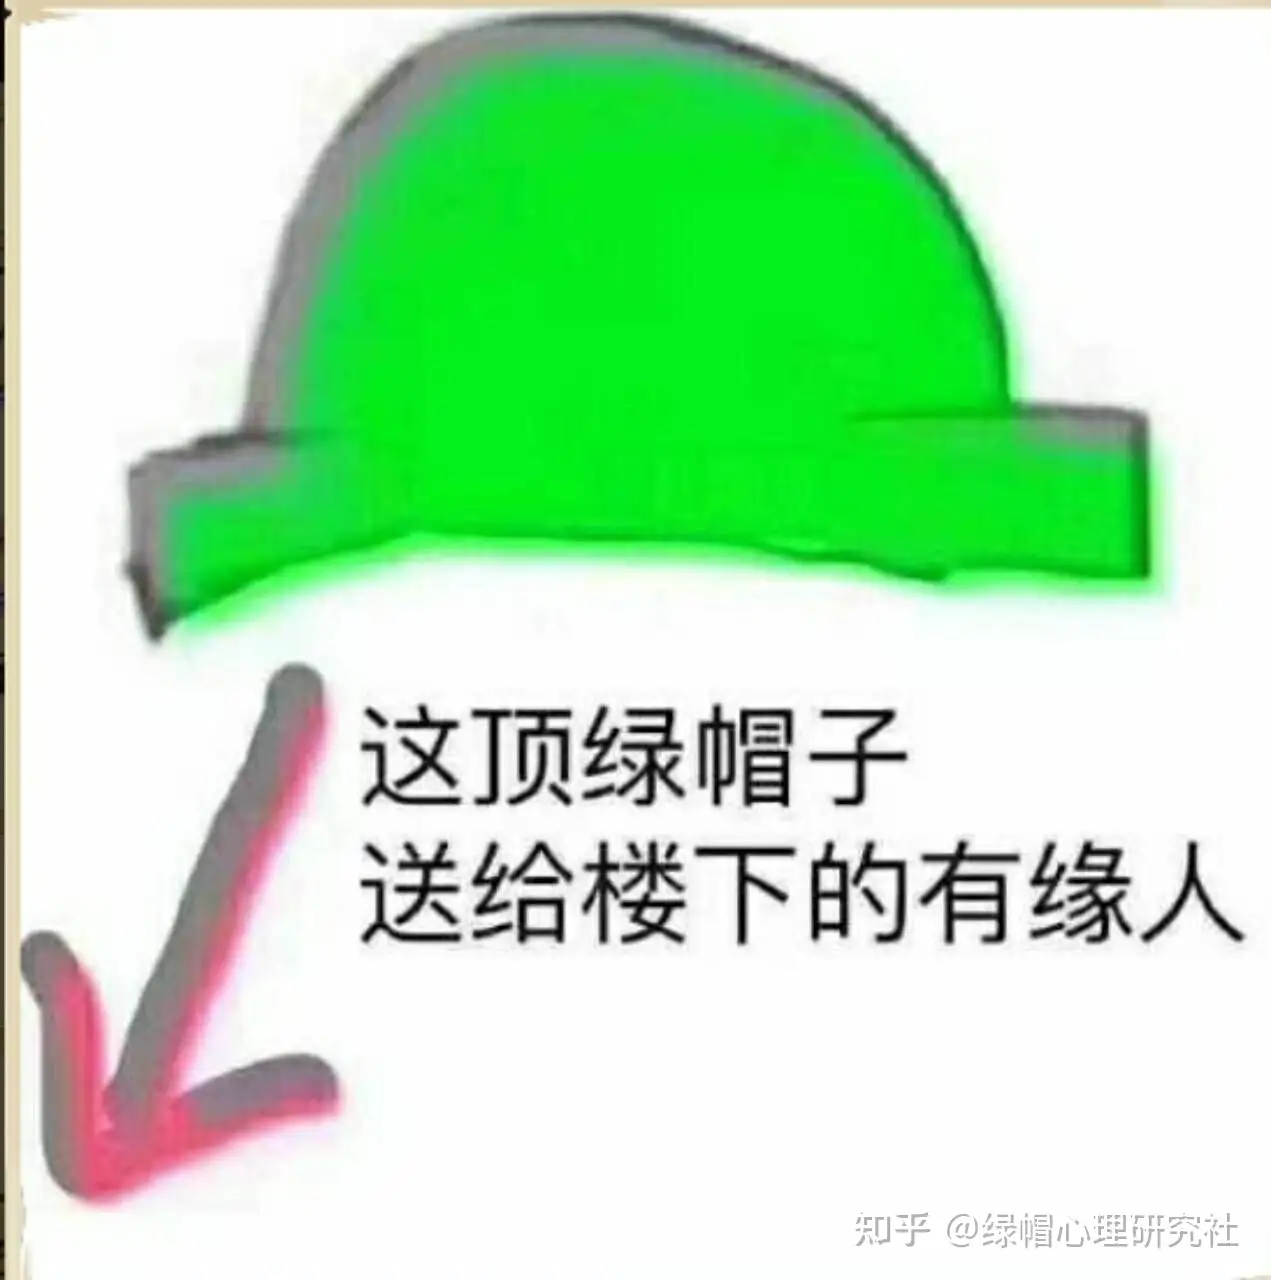 绿 帽